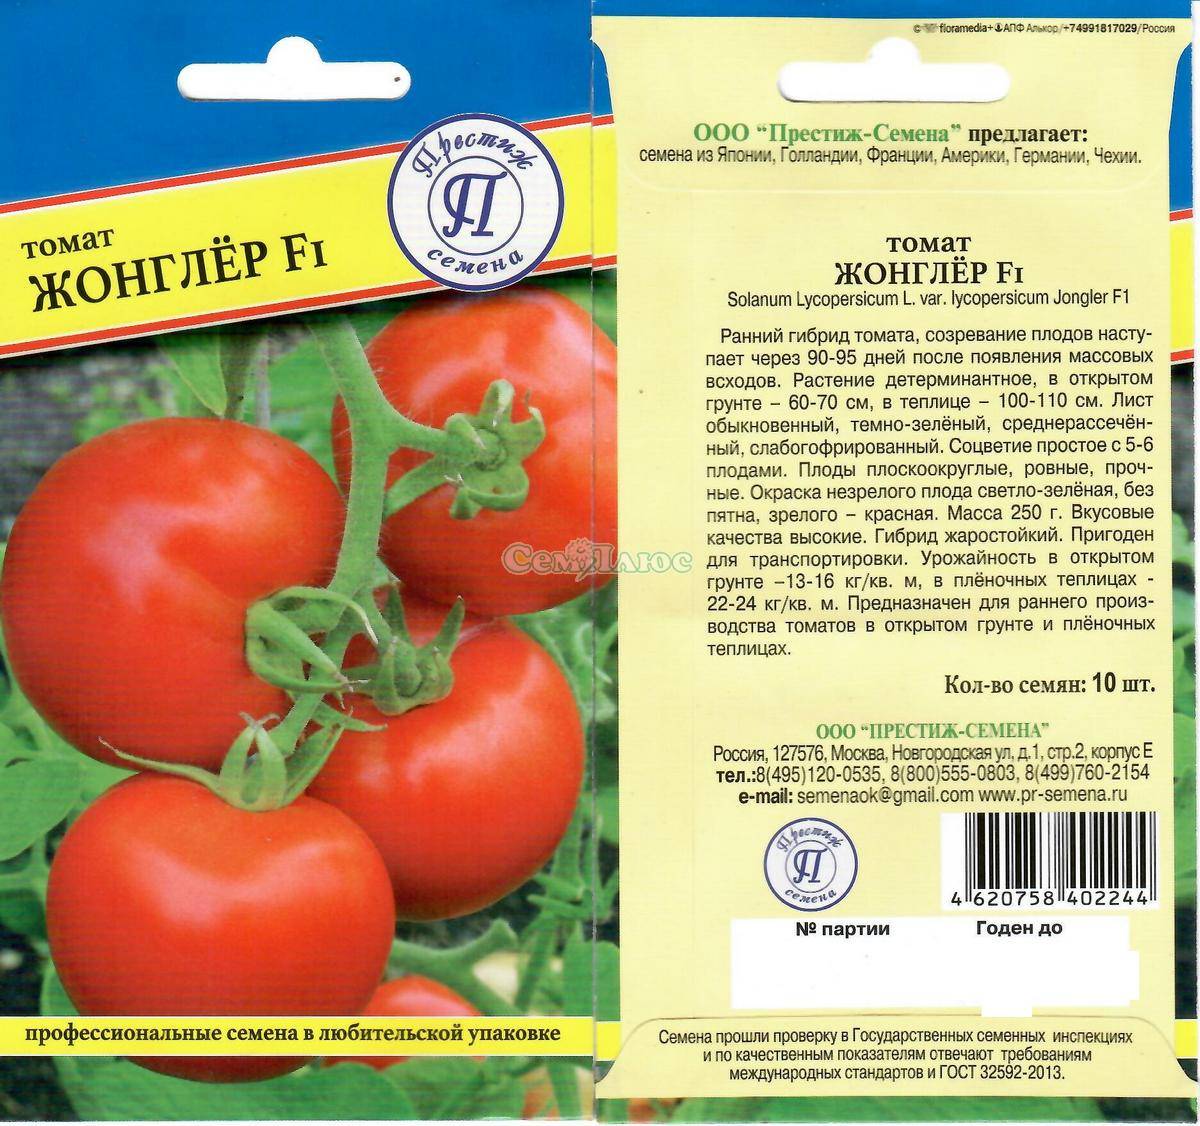 Описание томата флорида f1, преимущества и агротехника выращивания сорта